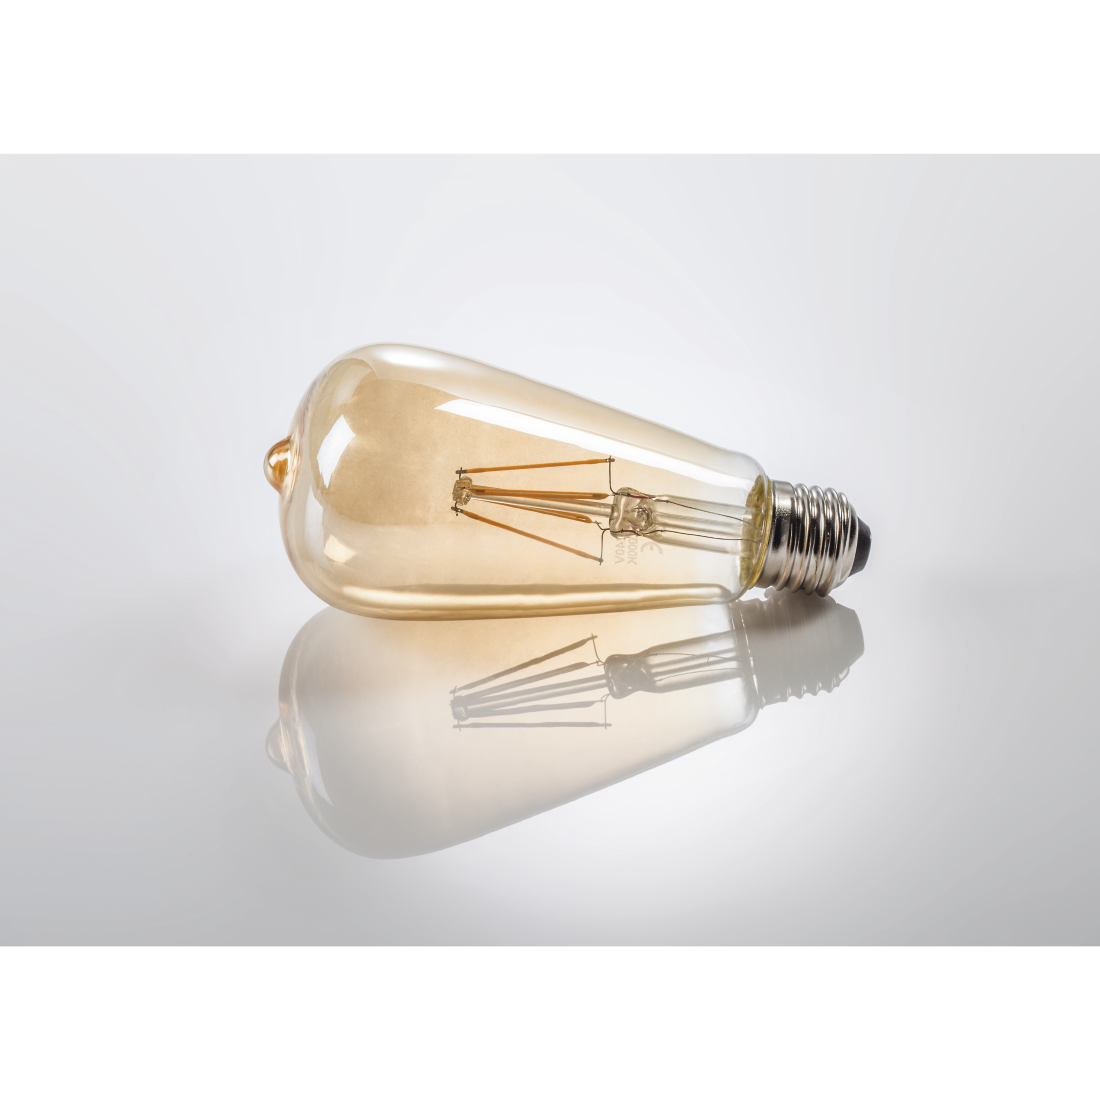 abx3 High-Res Image 3 - Xavax, Ampoule filam. LED, E27, 410lm remp. 36W, amp. vintage, ambre, blc chd